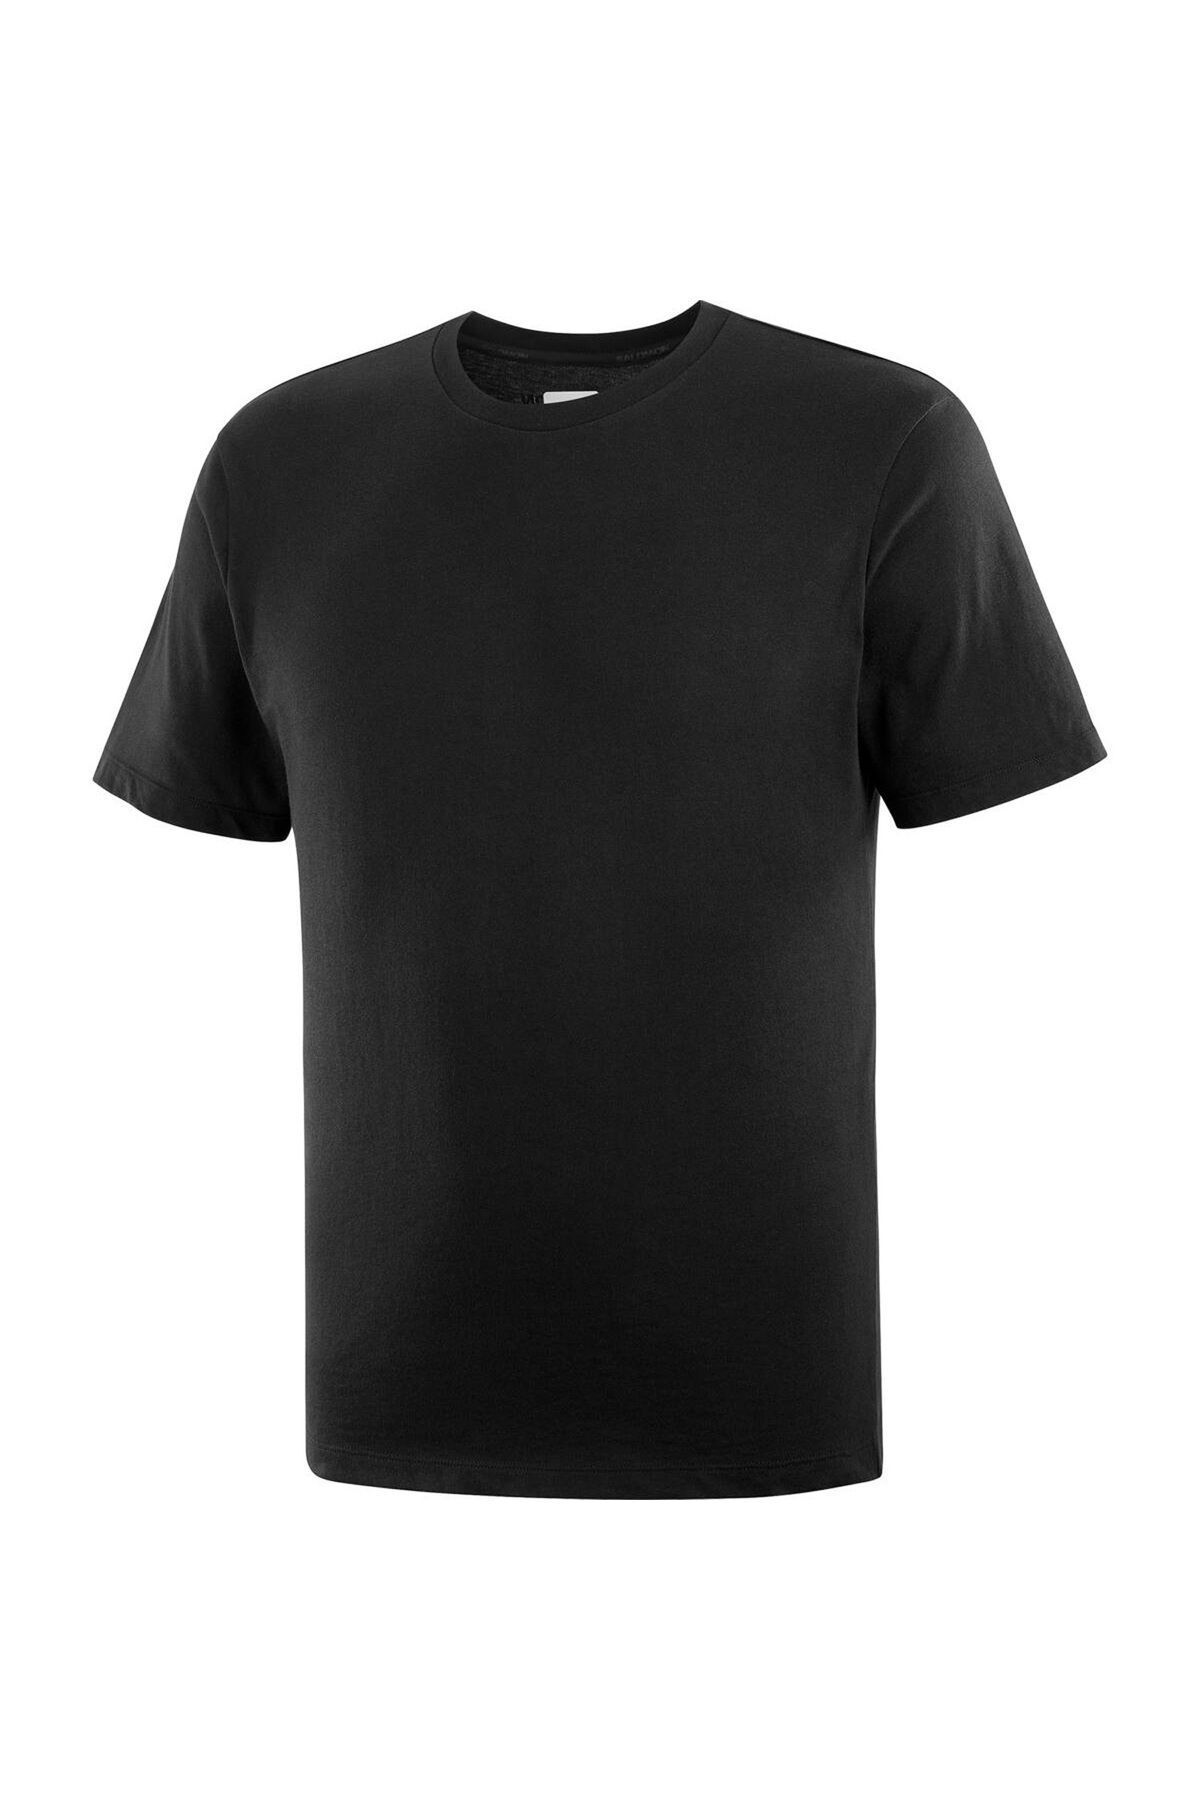 Salomon Sal Dynamic Erkek Outdoor Koşu T-shirt